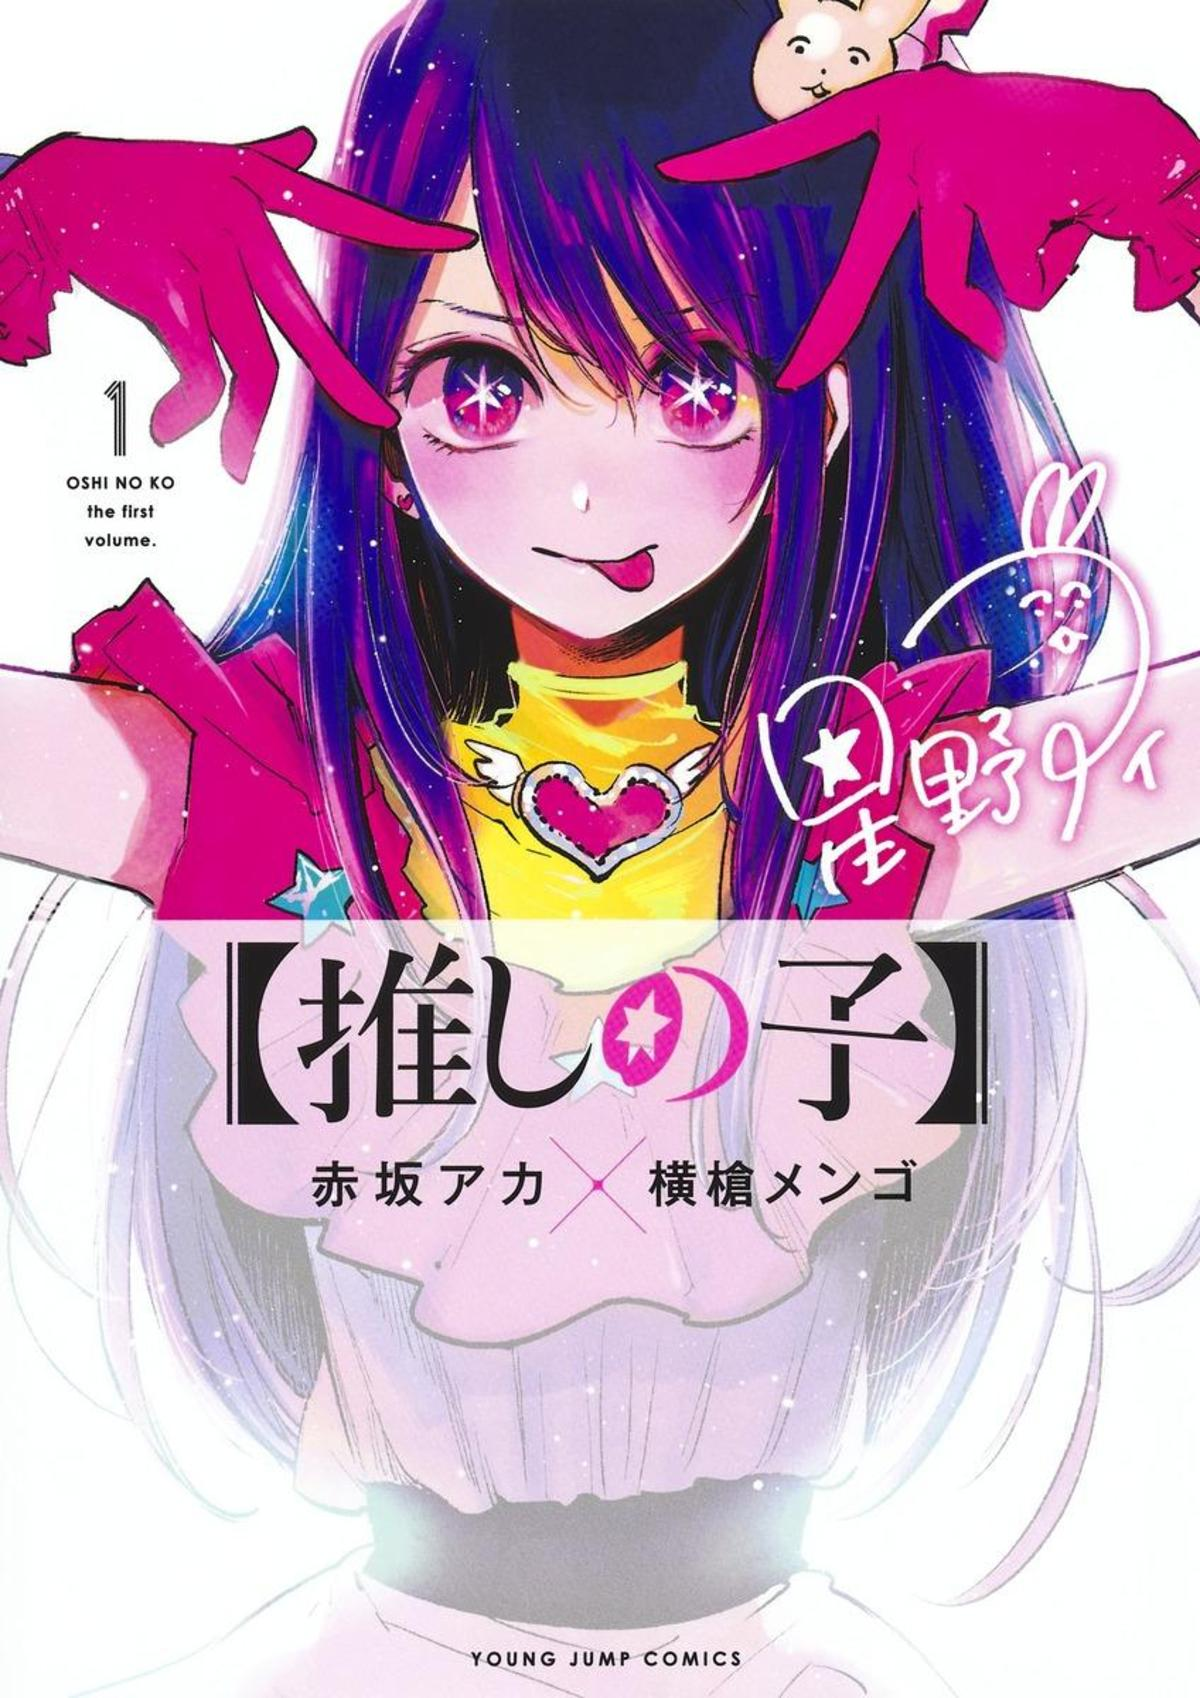 Oshi no Ko manga volume 1 cover